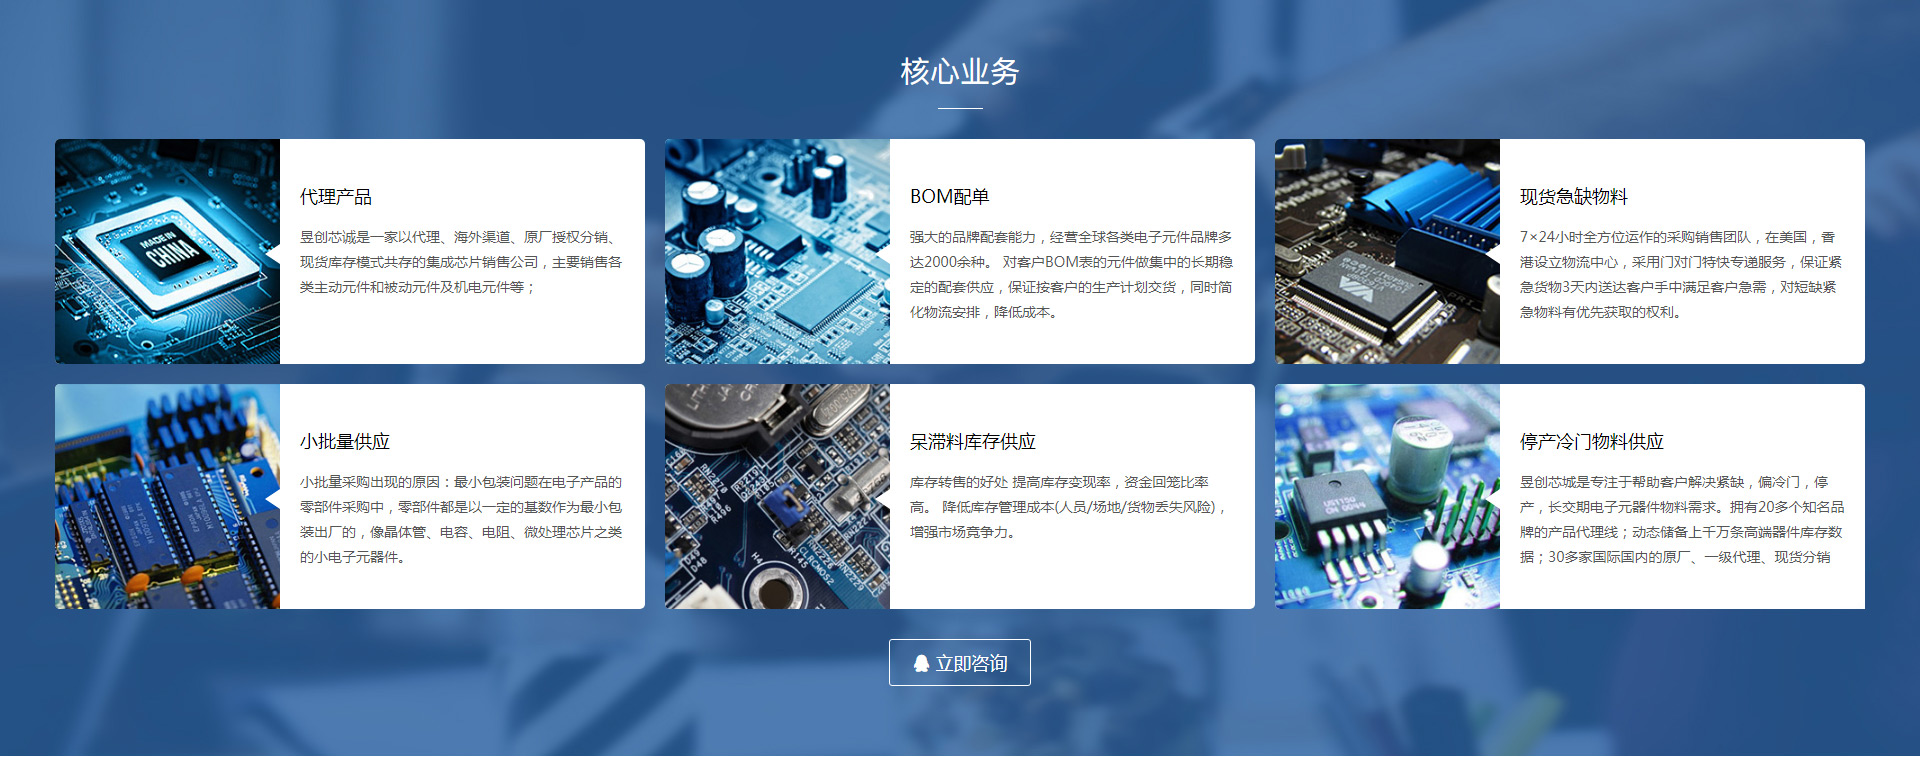 深圳网站建设公司 电子元器件网站模板